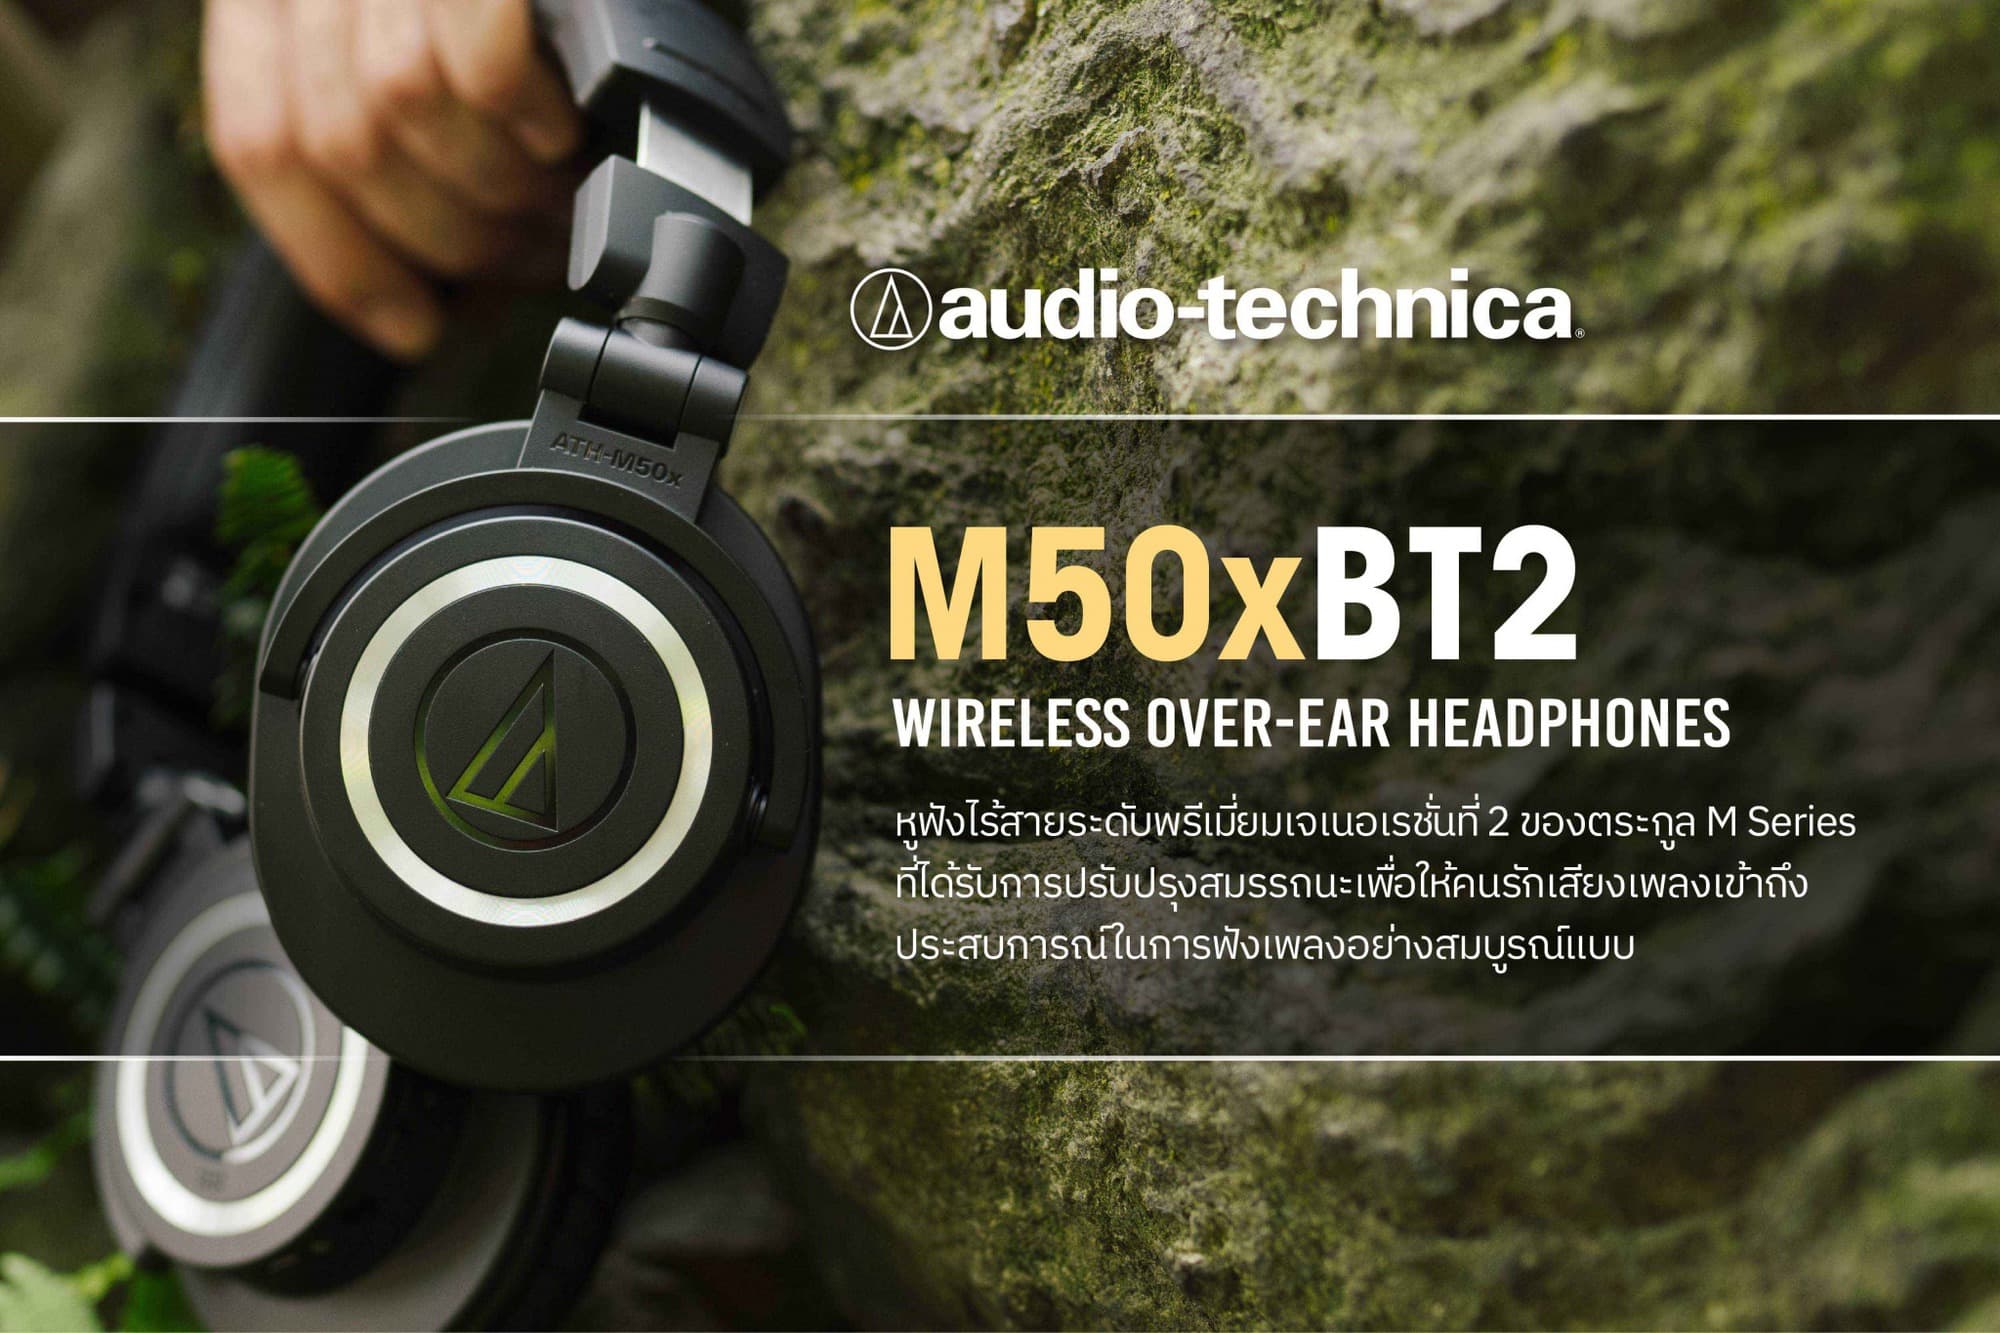 ยกระดับคุณภาพการฟังเพลงให้คมชัดระดับมืออาชีพและสะดวกสบายยิ่งกว่าเดิมกับ Audio-Technica ATH-M50xBT2 สุดยอดหูฟังไร้สาย 9